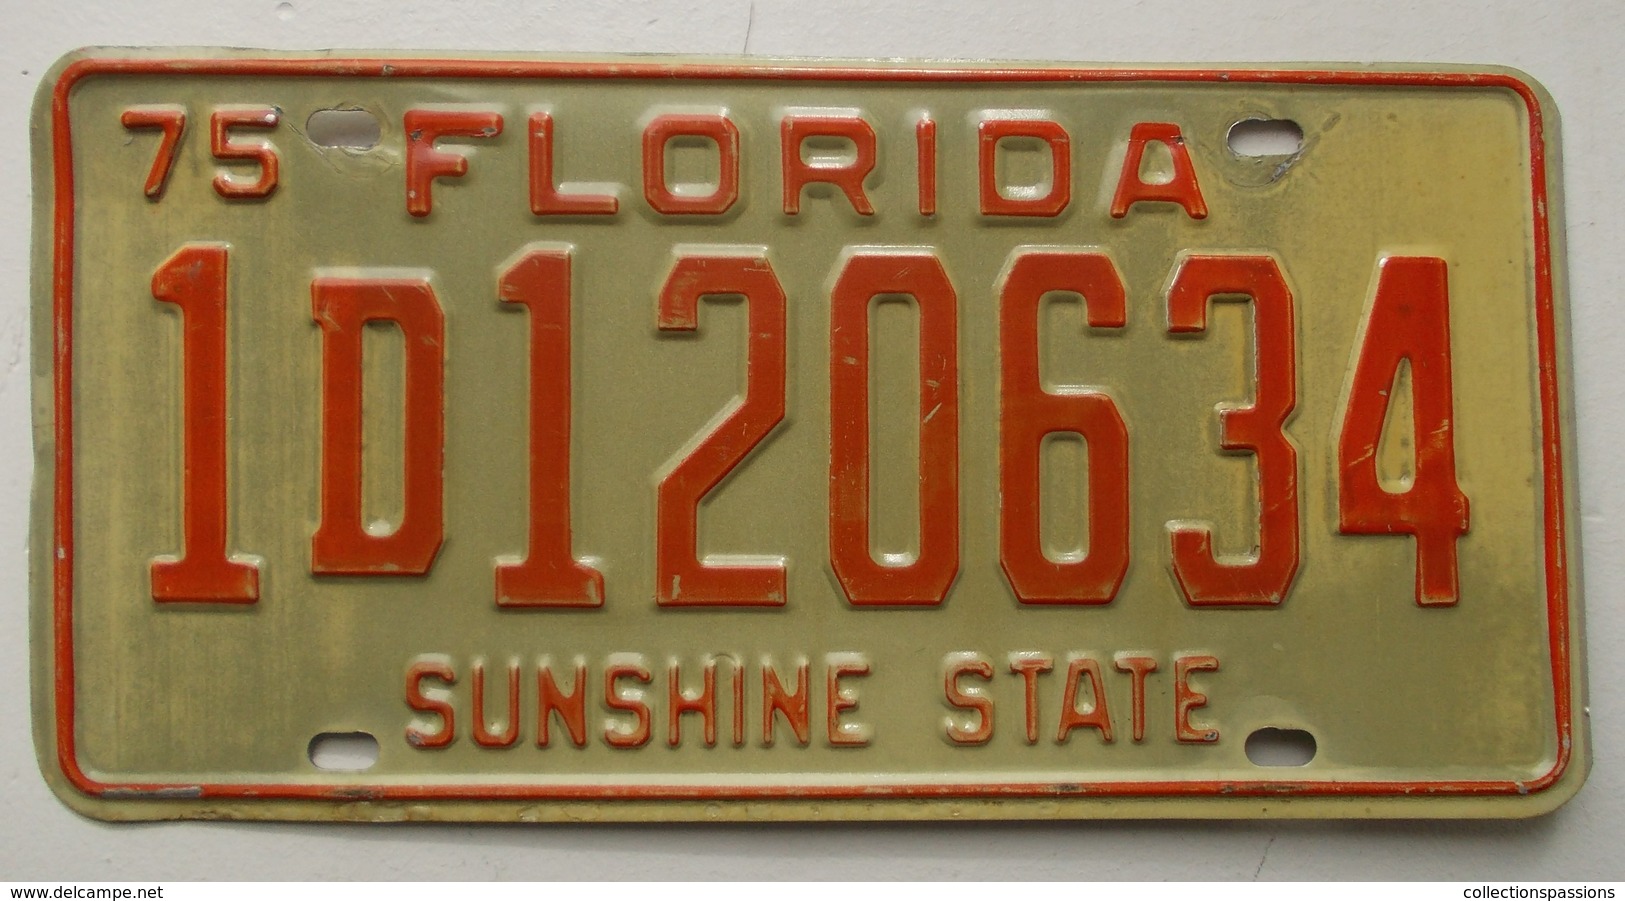 Plaque D'immatriculation - USA - Etat De Floride 1975 - - Kennzeichen & Nummernschilder